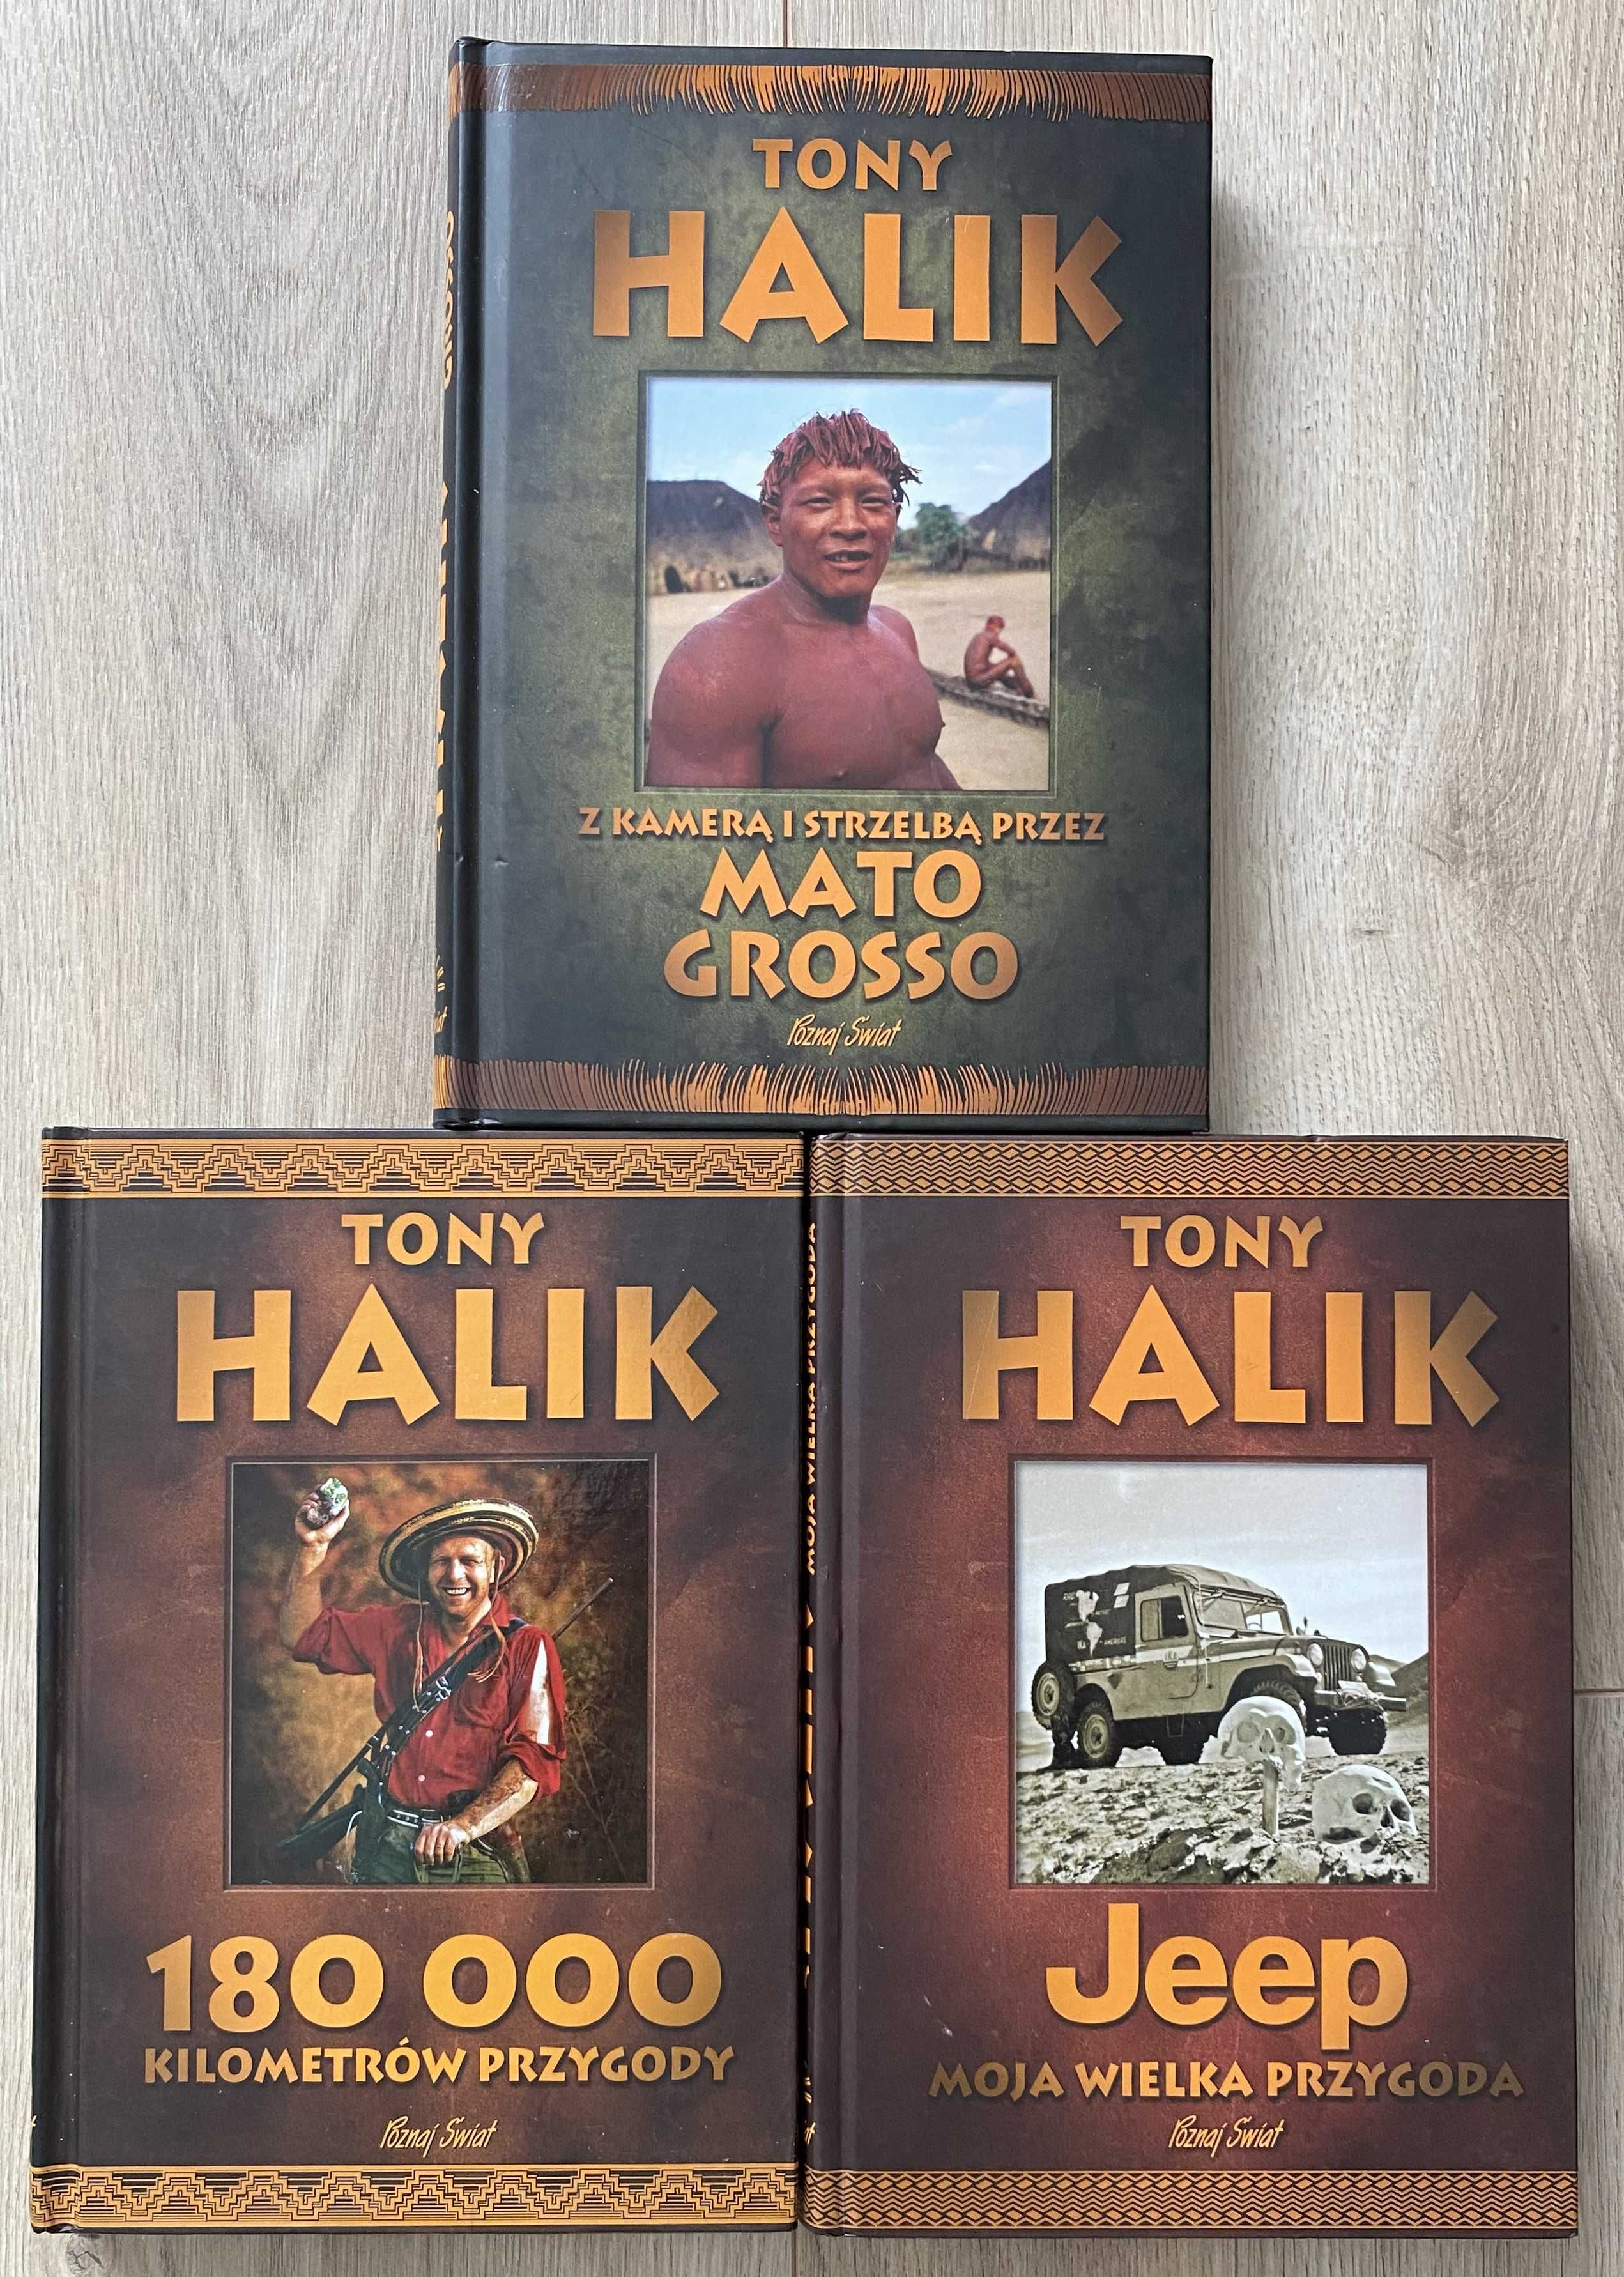 Jeep moja przygoda Mato Grosso 180000 kilometrów przygody Tony Halik